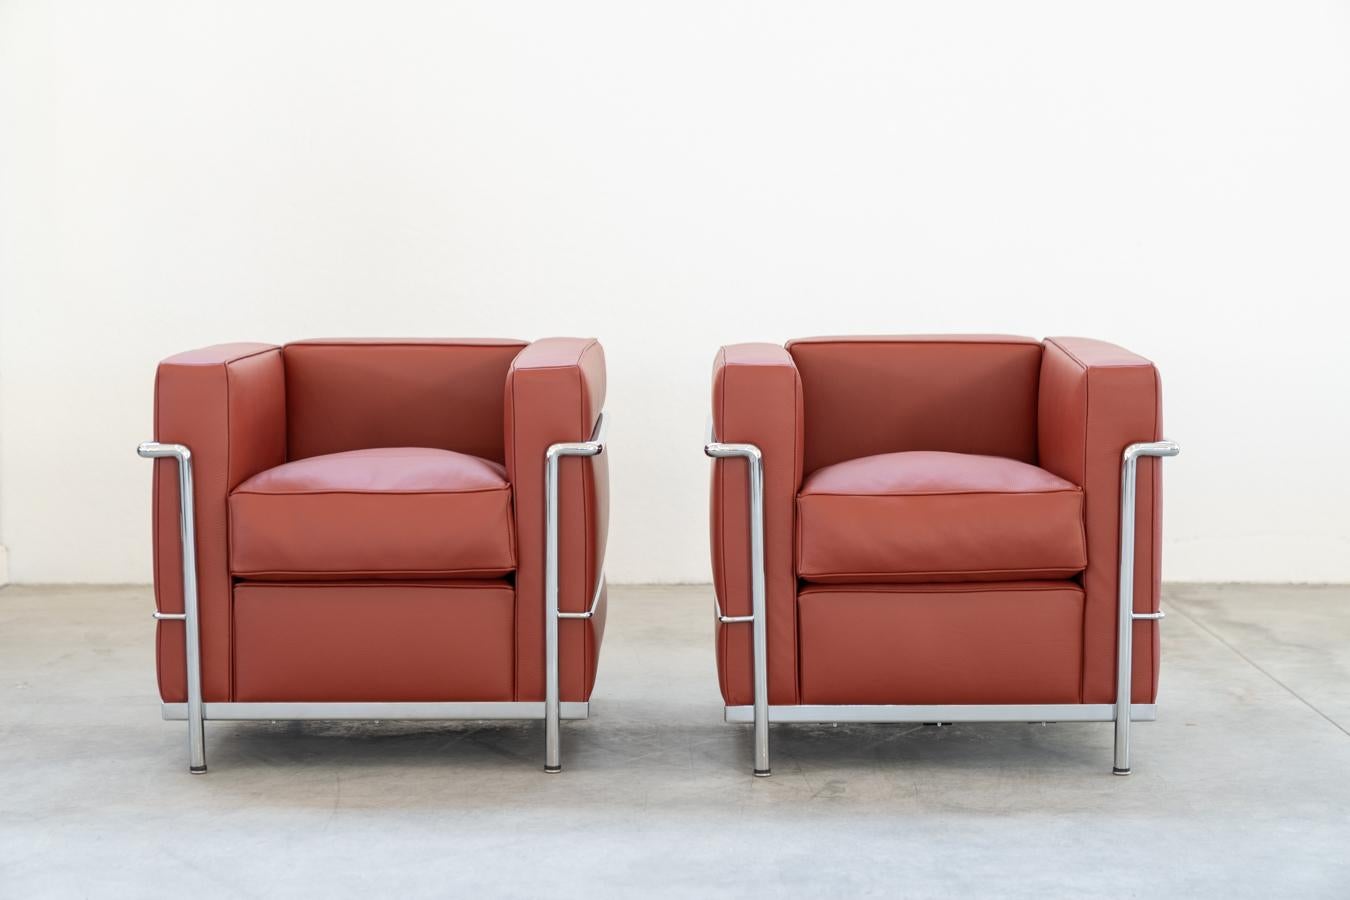 Paire de fauteuils, LC2 CARMIN CLUB CHAIR, Le Corbusier ET Charlotte Perriand pour Cassina-1980	
Superbe paire de fauteuils Le Corbusier d'origine, jamais utilisés, comme neufs. Leur peau très épaisse au toucher ne présente aucune égratignure,